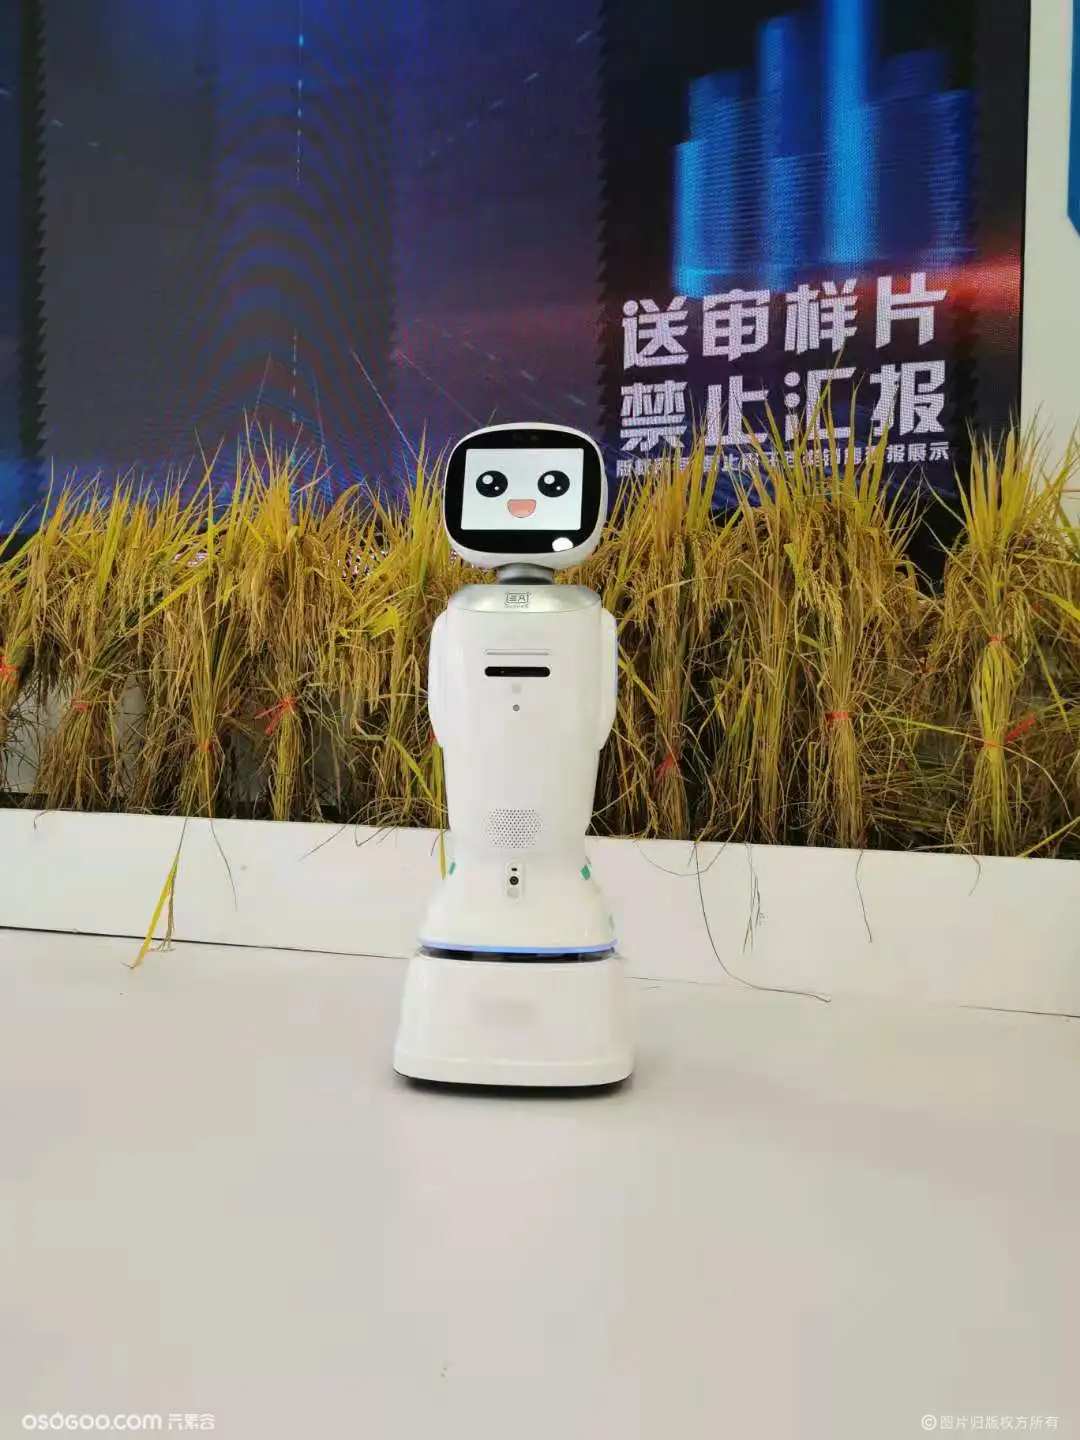 银行同款机器人 地产公司服务机器人 主持互动展厅讲解迎宾接待